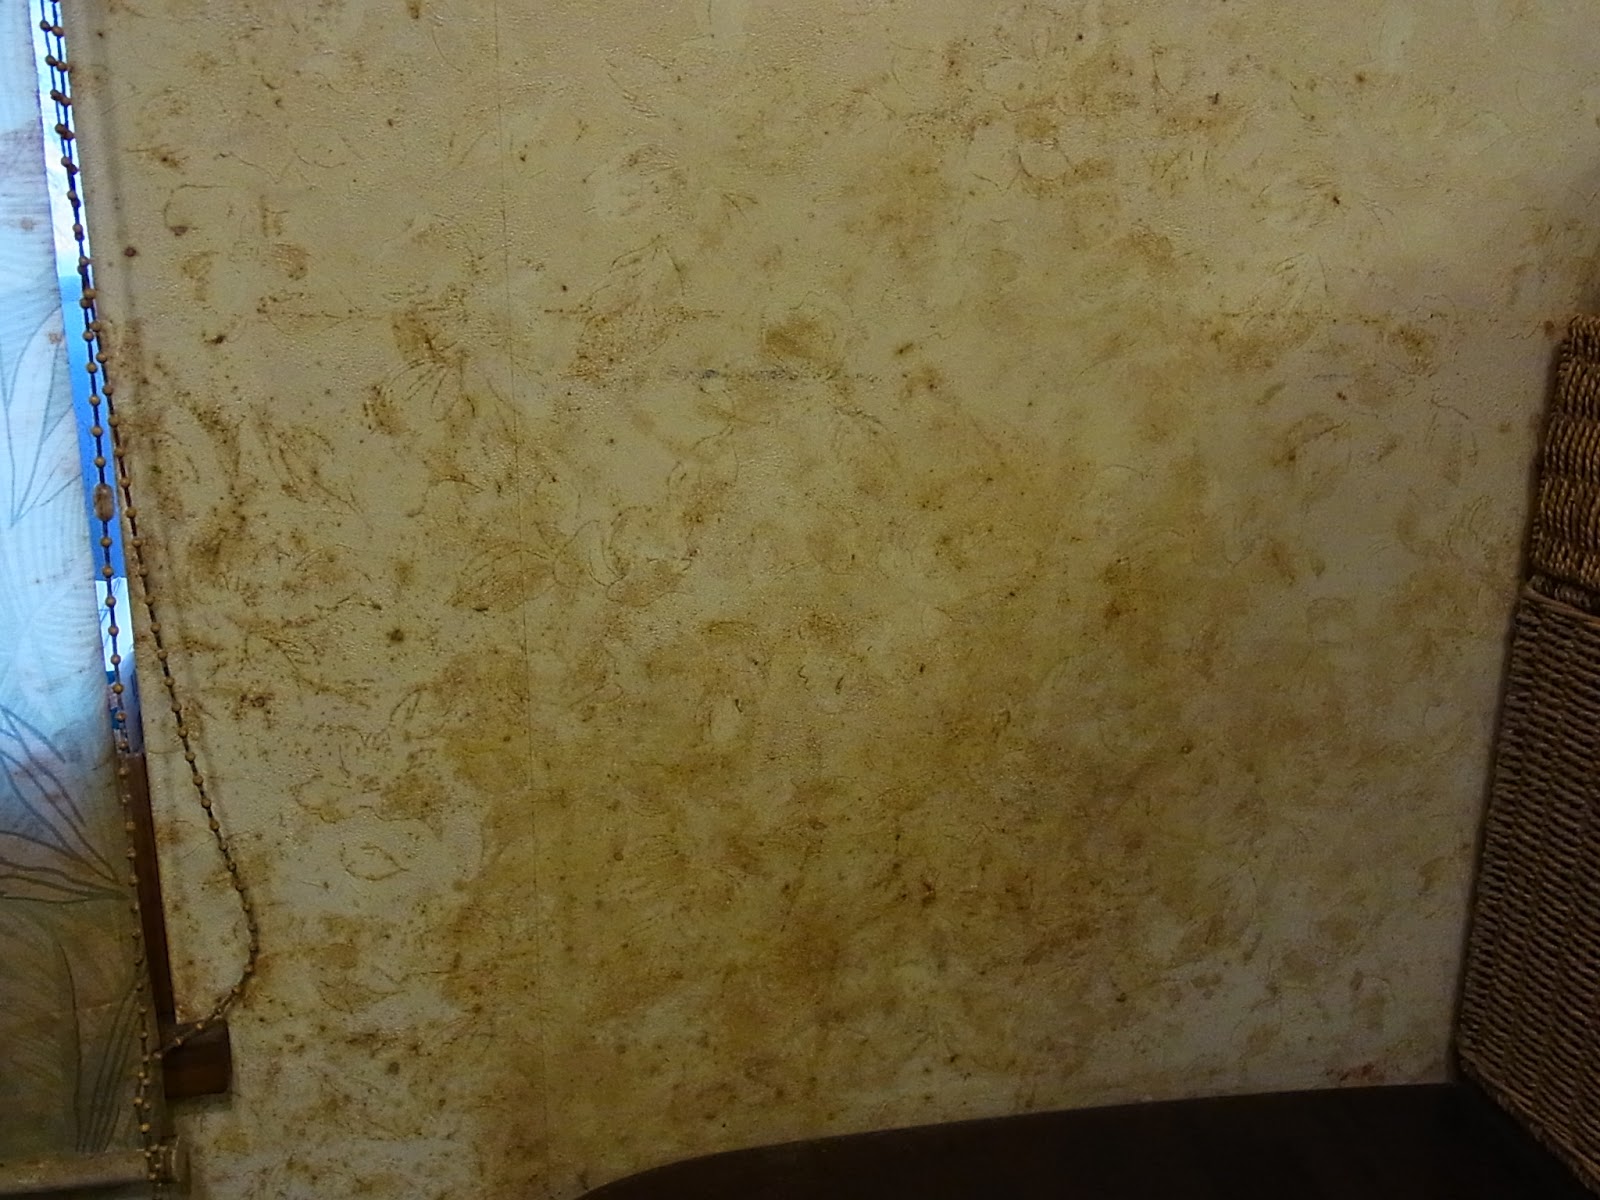 アビリティクリーンで壁の18年分のヤニ取り 汚部屋だらけの家を綺麗に片づけ 掃除するブログ